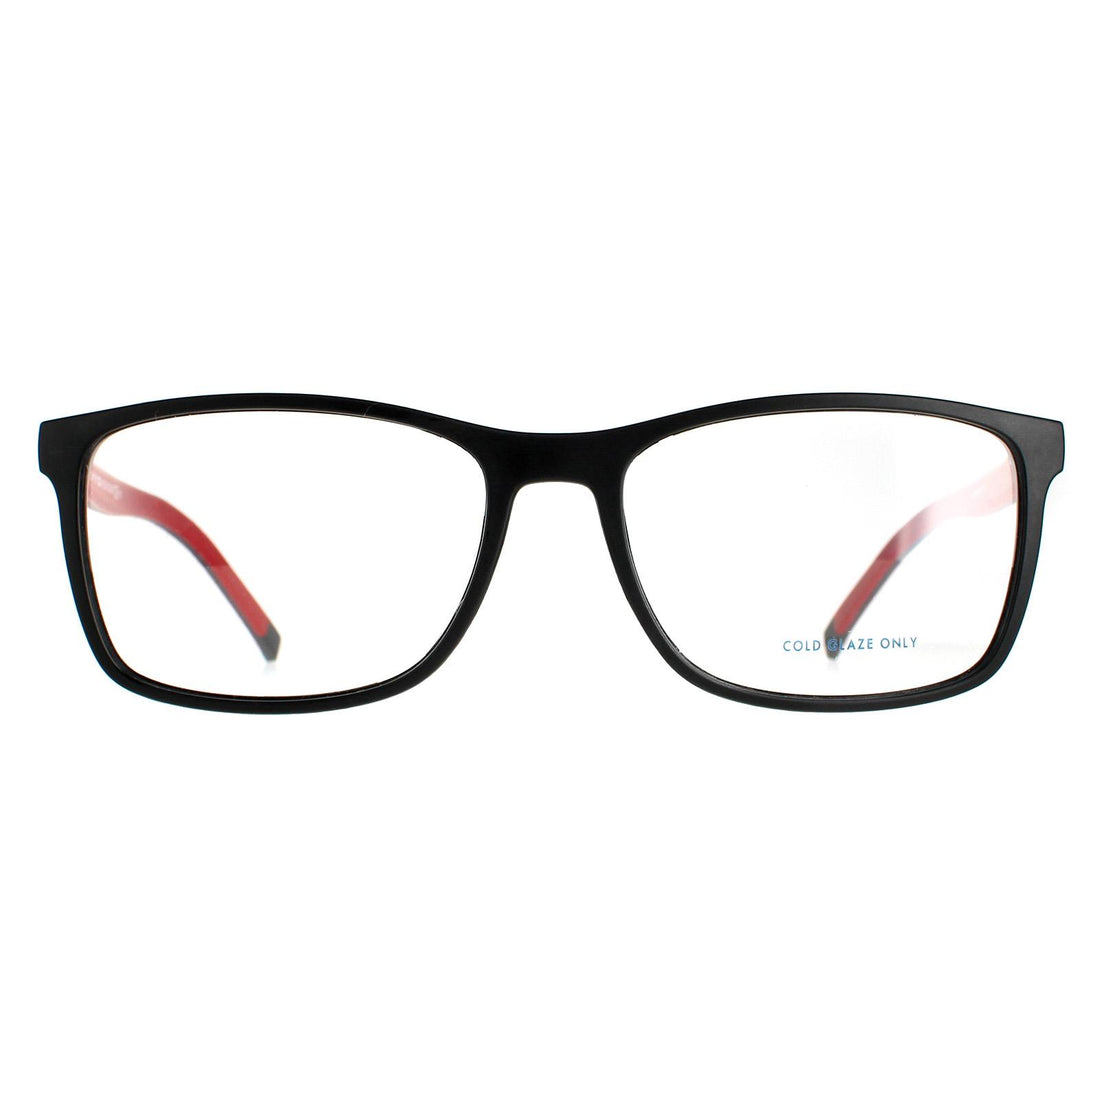 Tommy Hilfiger TH 1785 Glasses Frames Matte Black Red